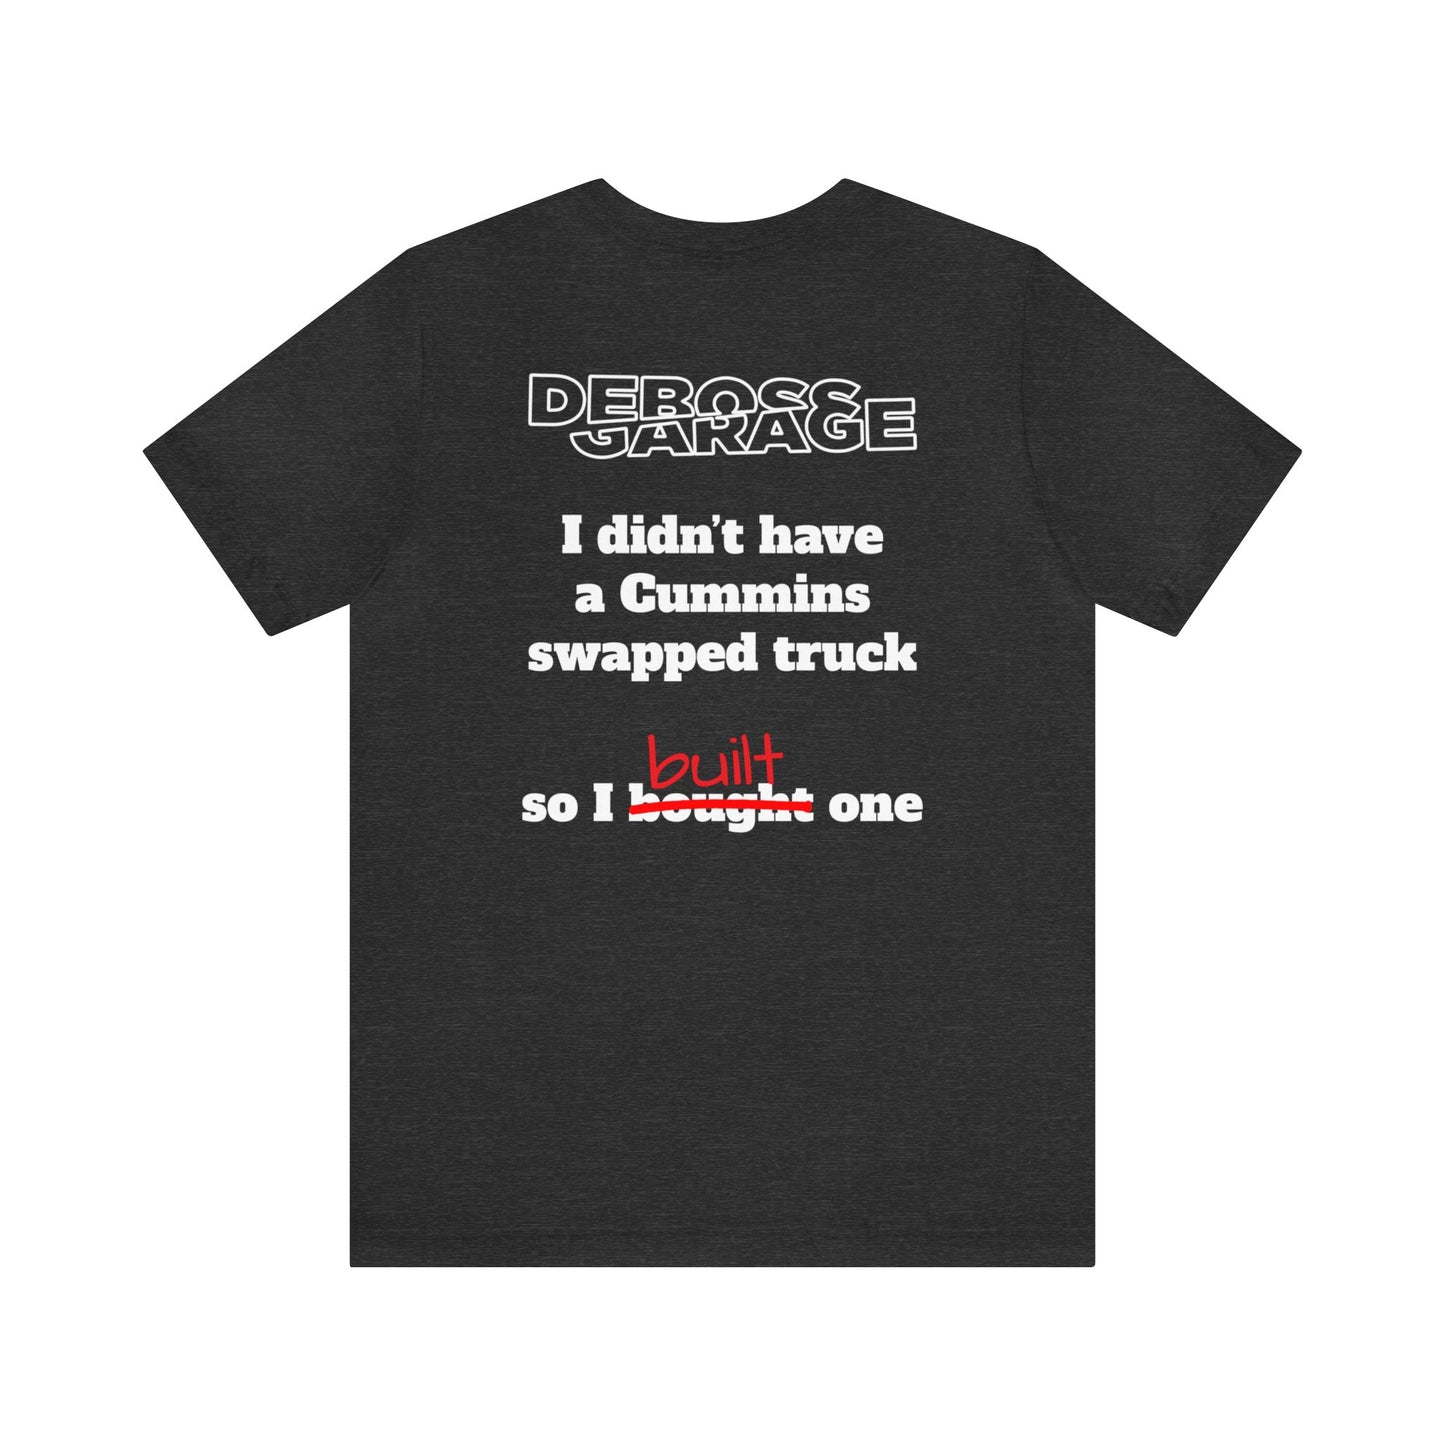 Cummins Swap Truck T-shirt